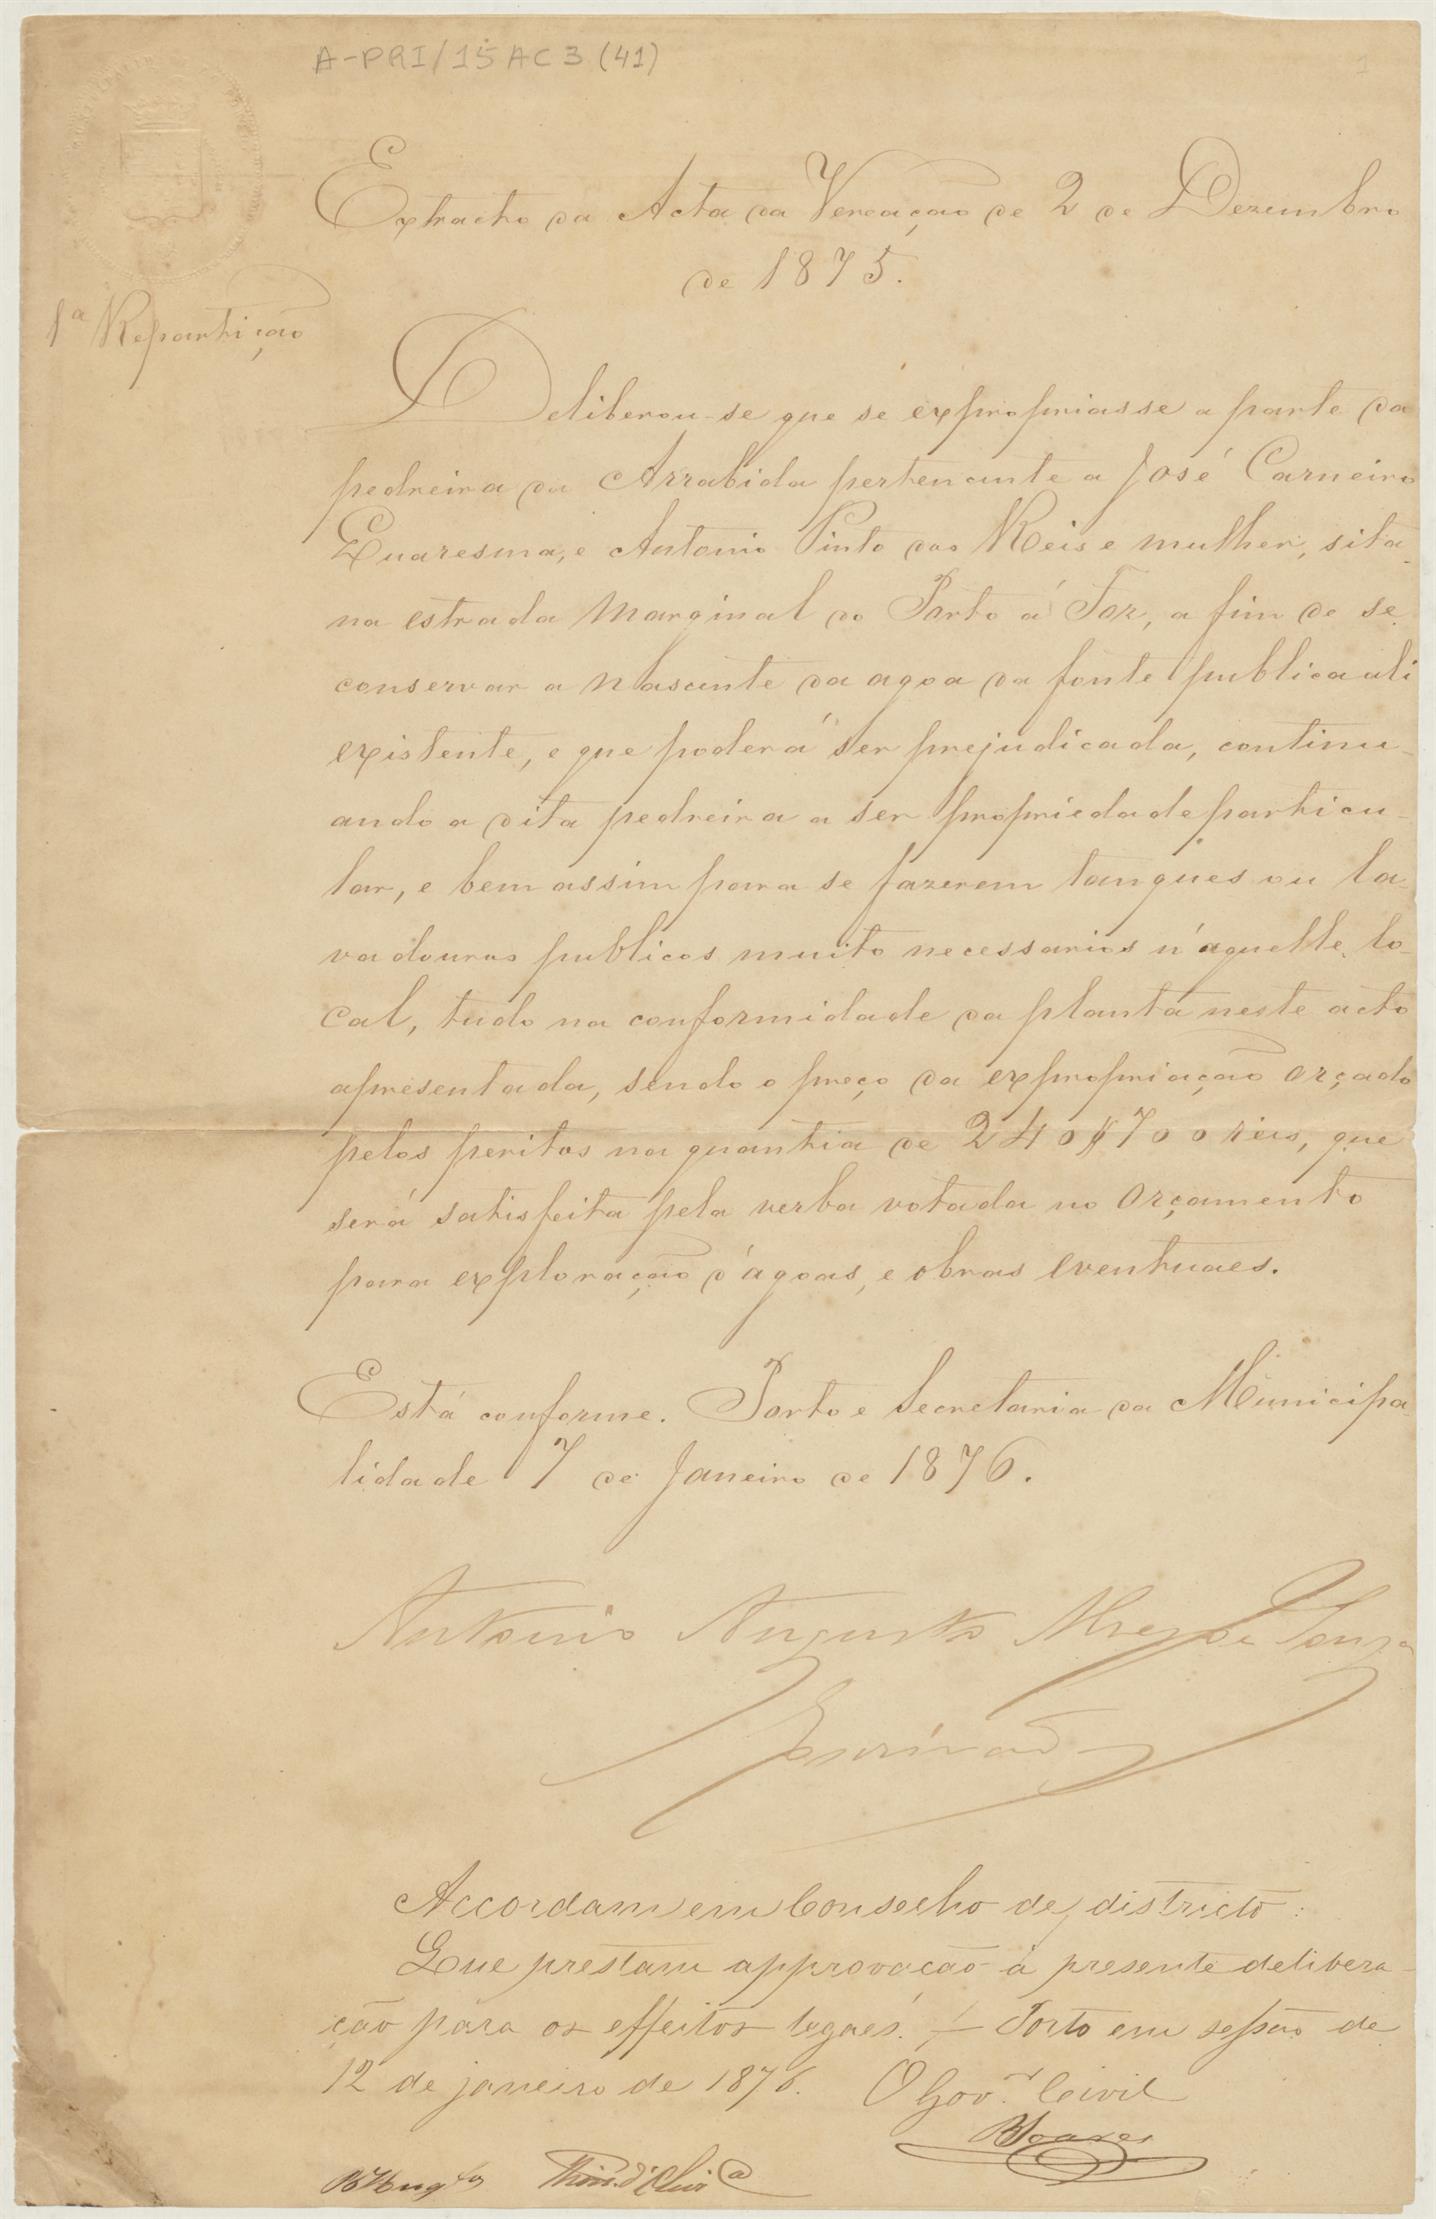 Excerto da ata de vereação de 2 de dezembro de 1875